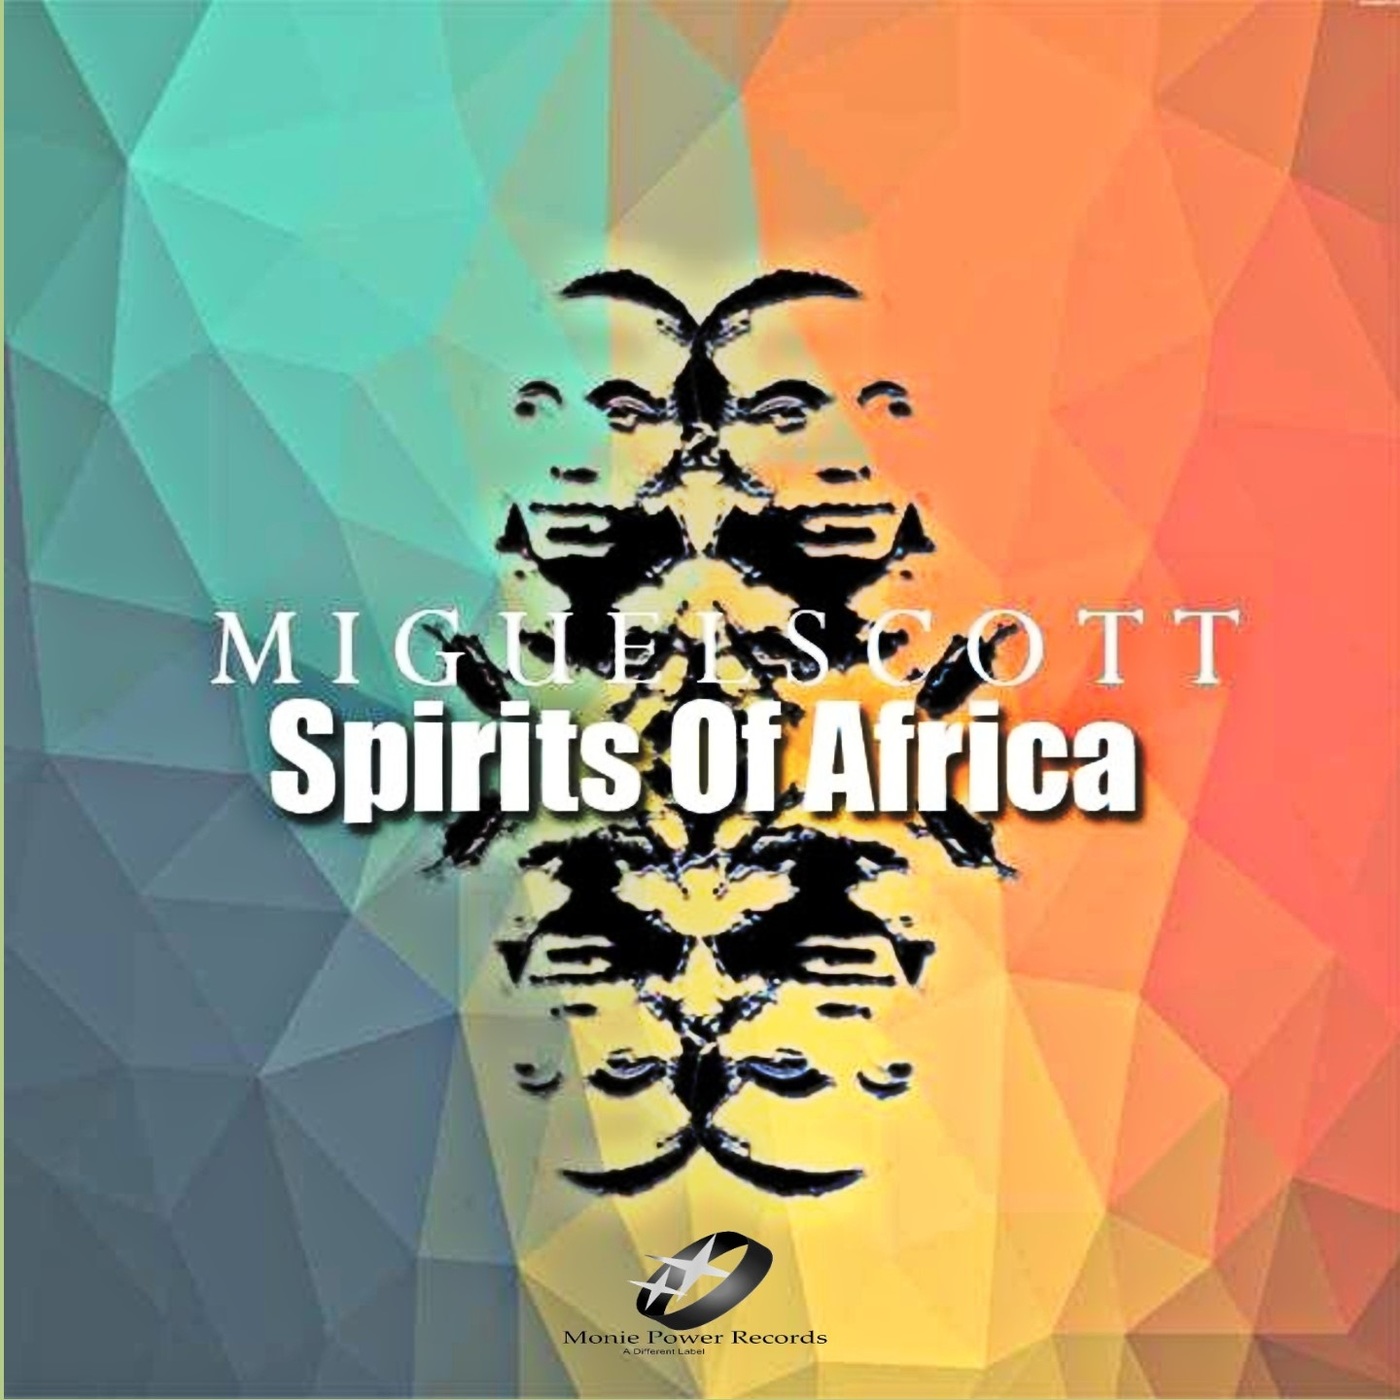 Miguel Scott - Spirits of Africa / Monie Power Records